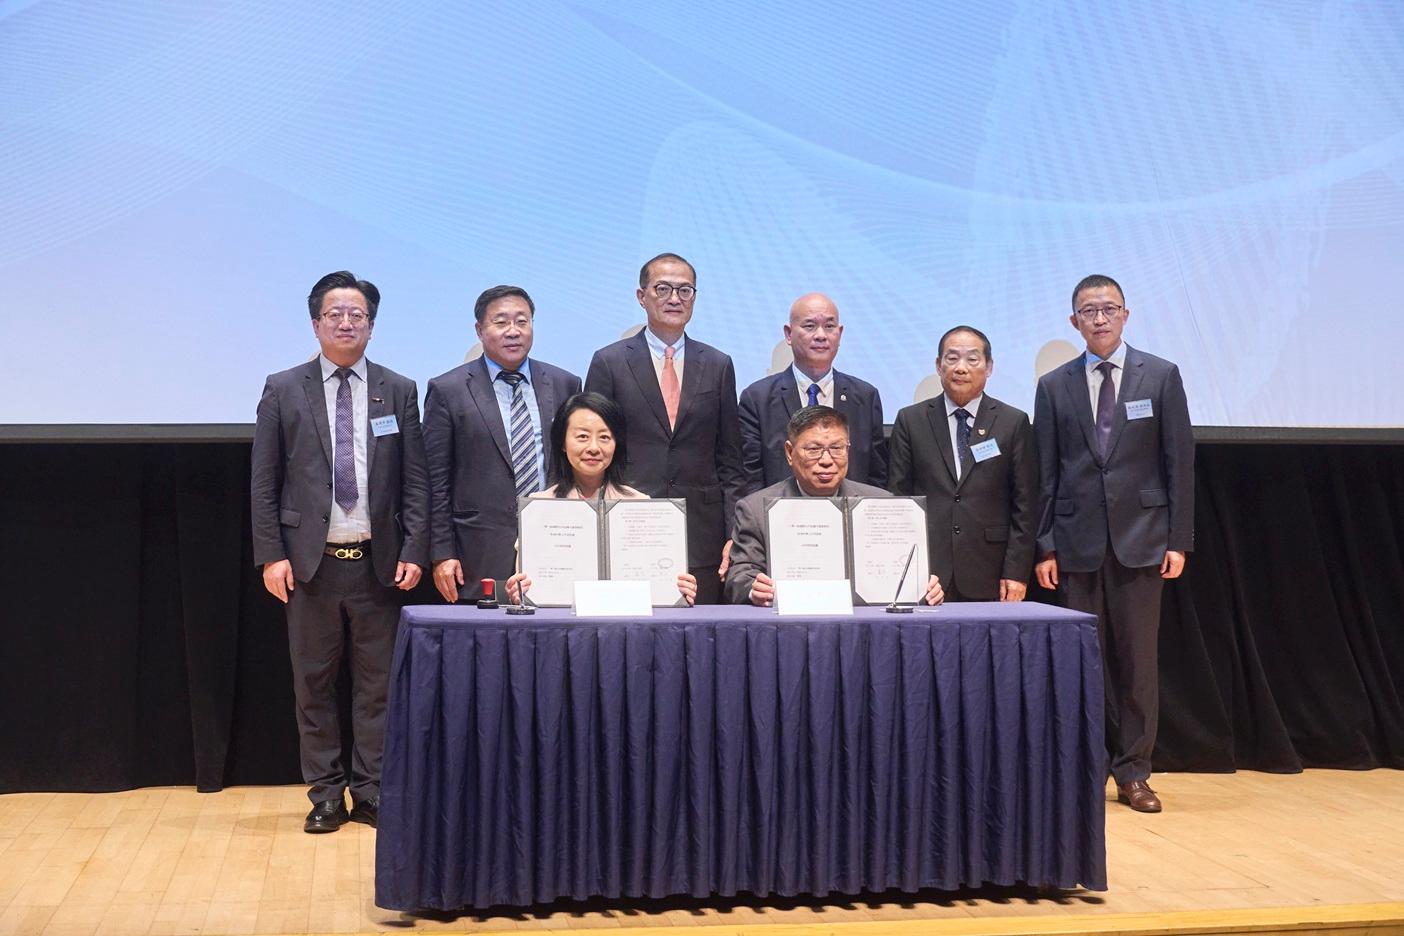 於高峰論壇上，香港科學工作者協會主席萬鈞教授（前排左)與一帶一路國際合作組織中國事務部副秘書長高星教授（前排右）簽署合作備忘錄。